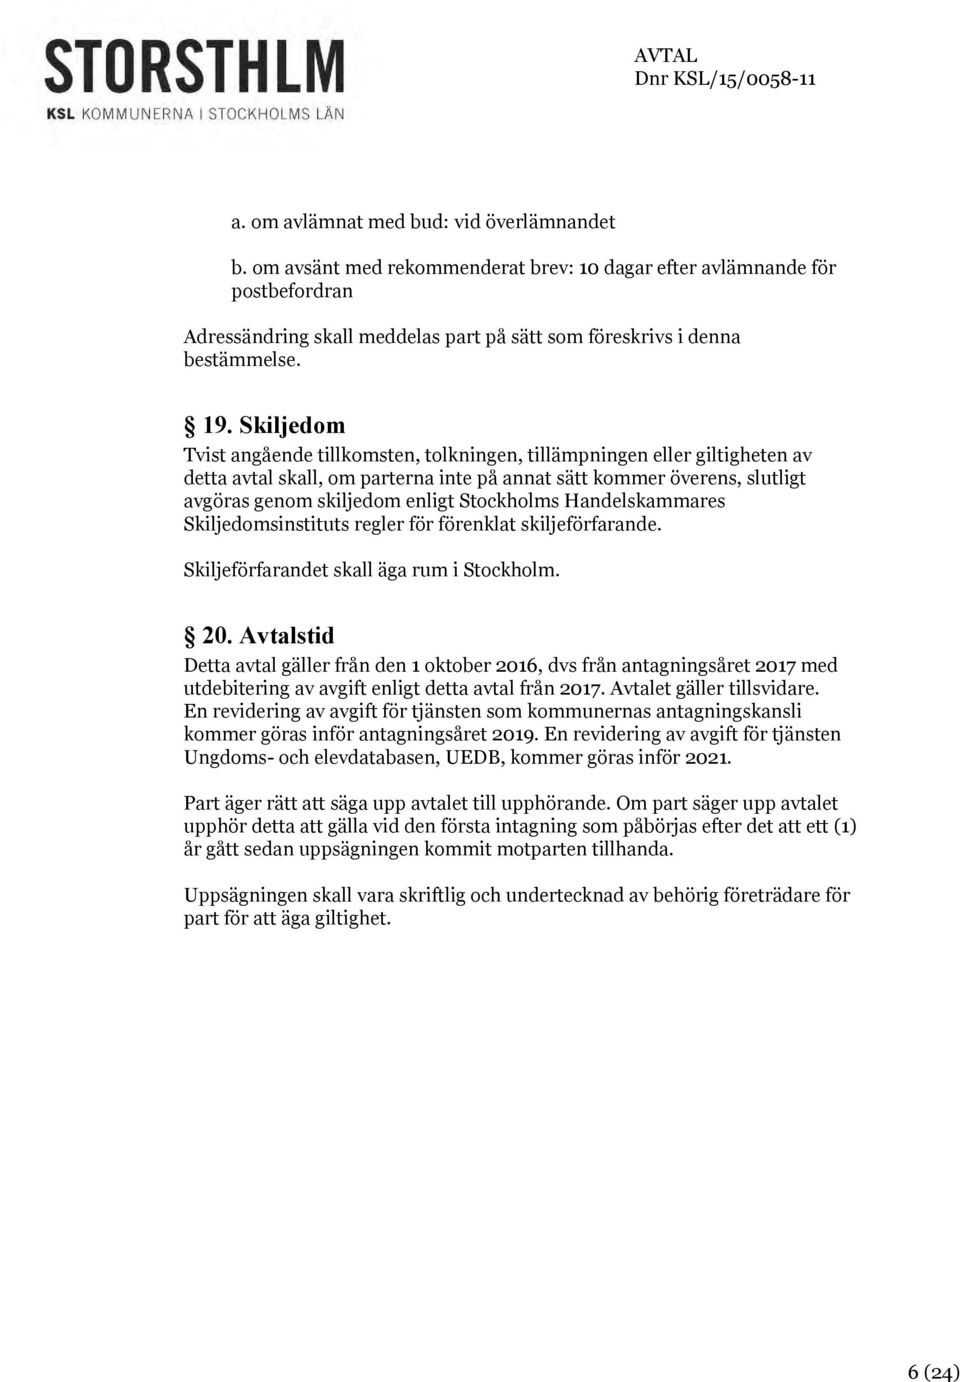 Stockholms Handelskammares Skiljedomsinstituts regler för förenklat skiljeförfarande. Skiljeförfarandet skall äga rum i Stockholm. 20.